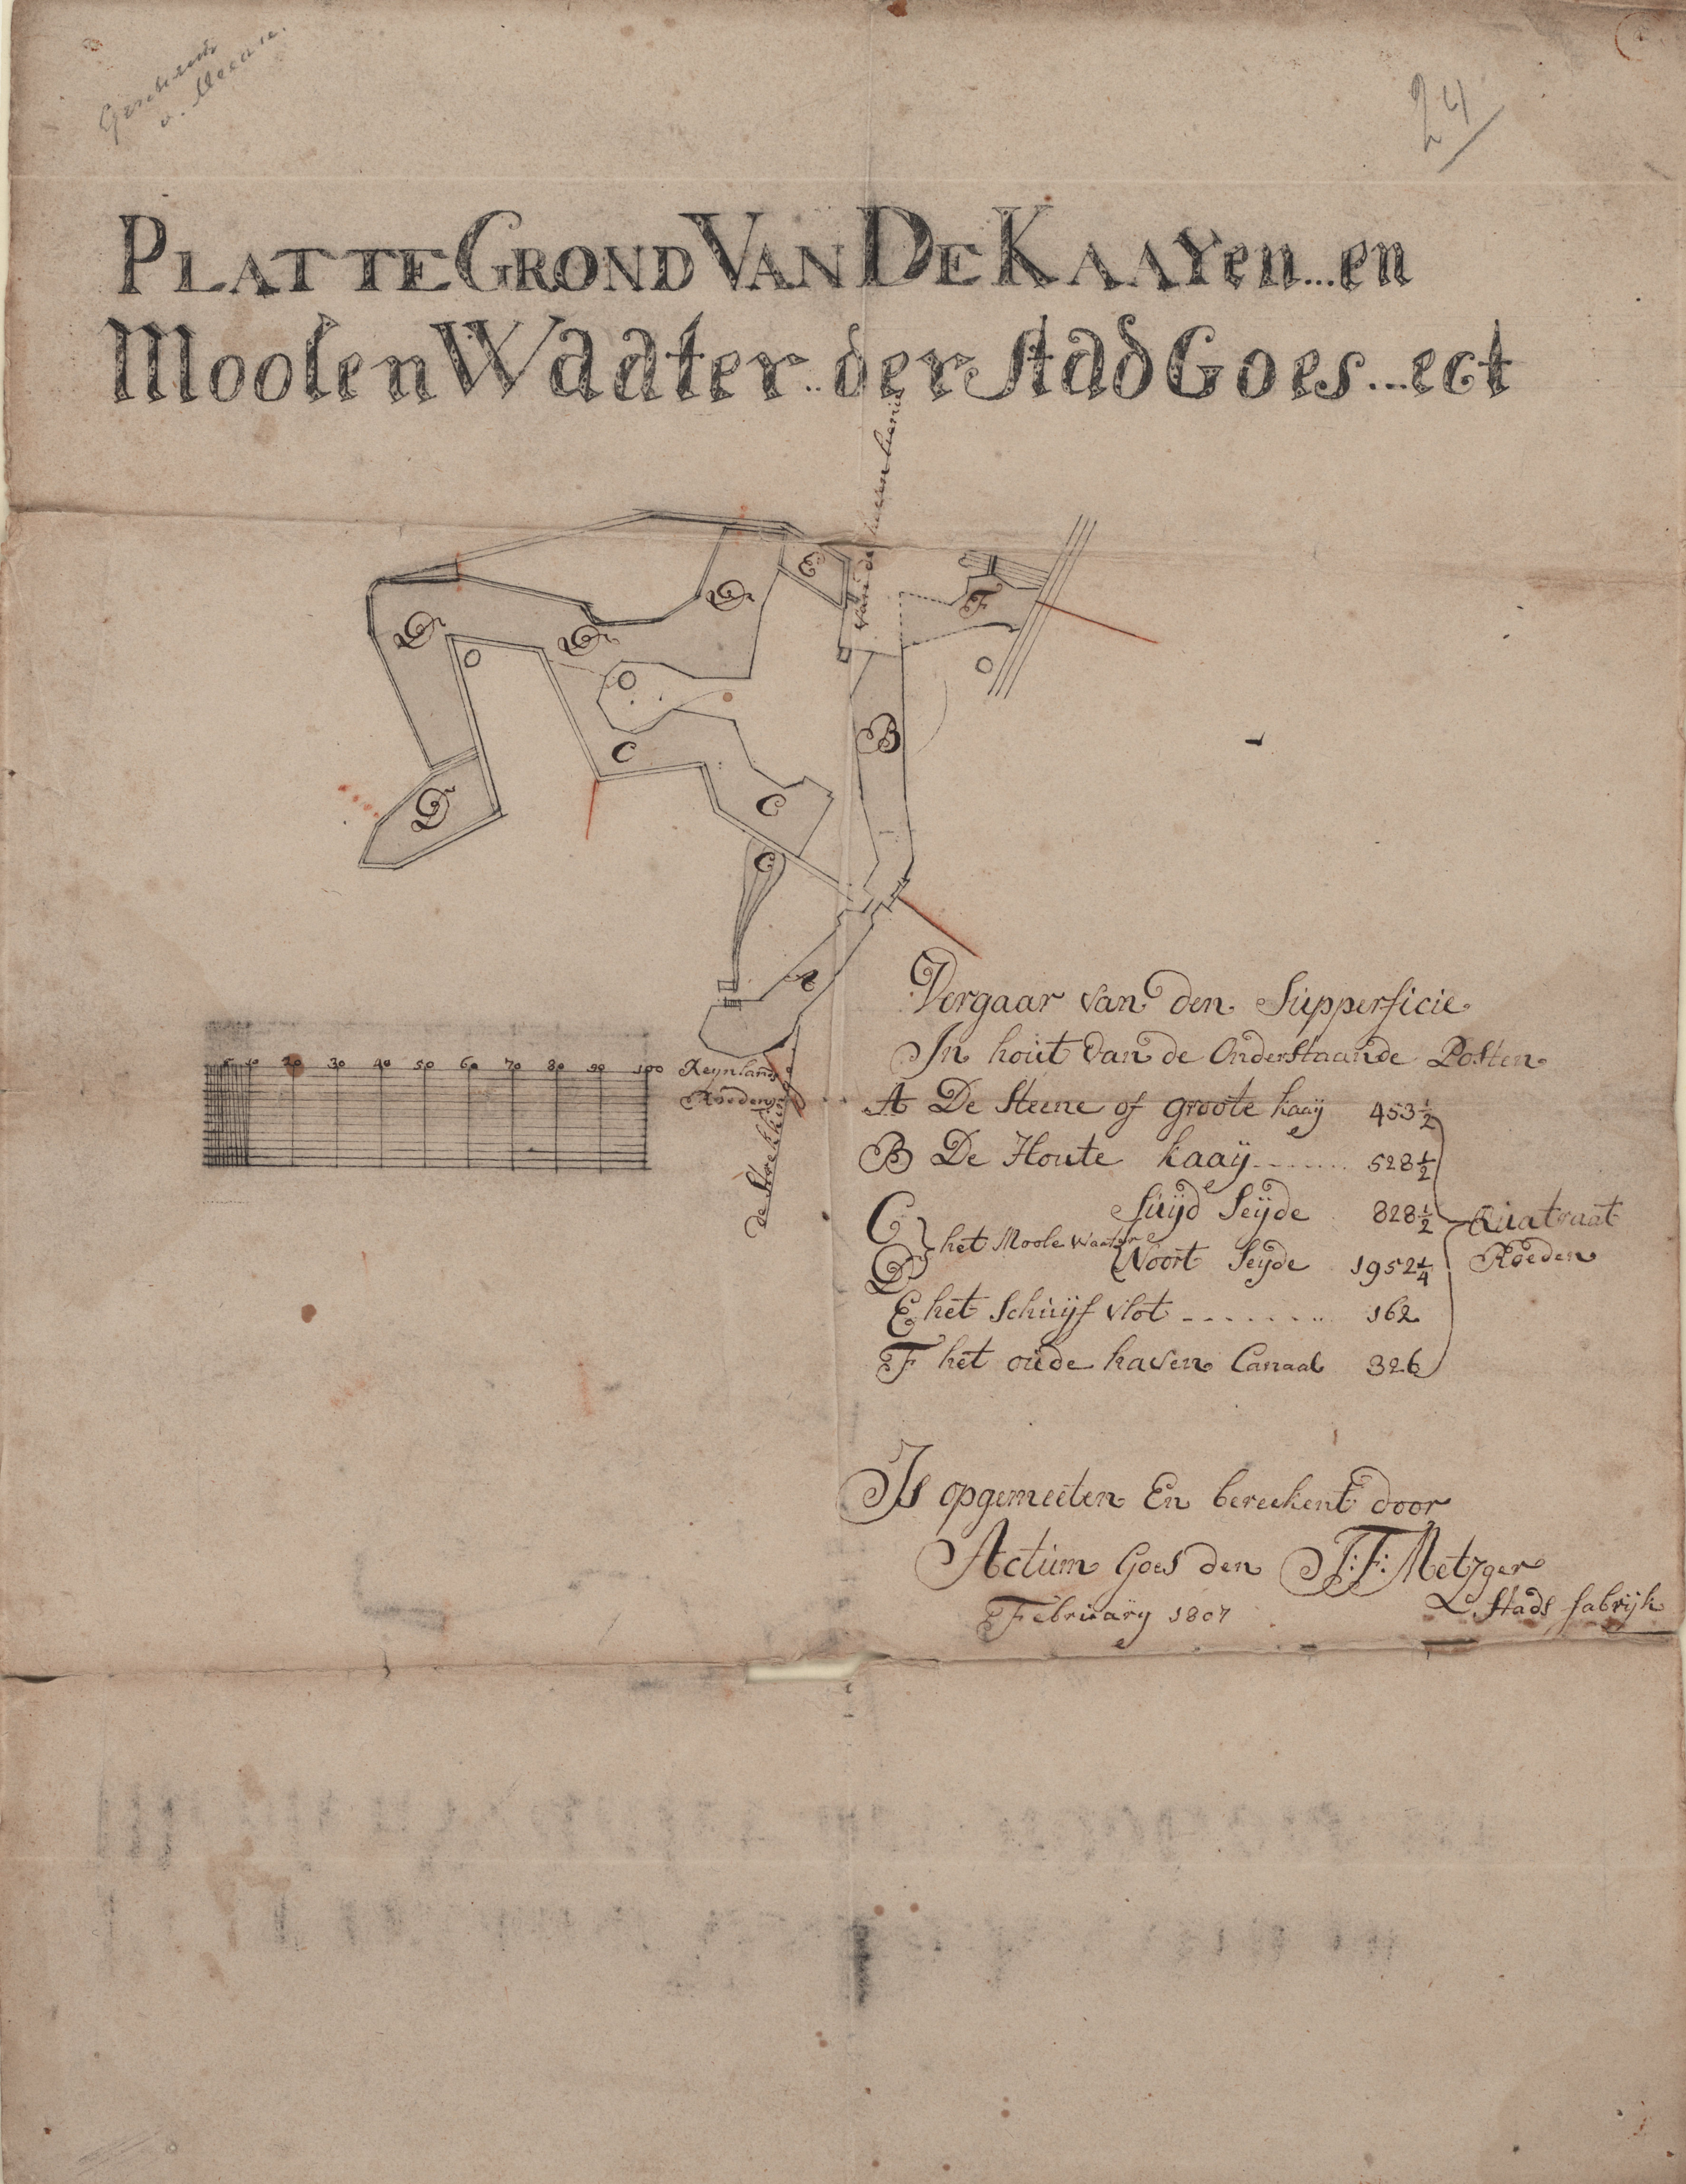 Plattegrond van de kaden en molenwater, F.J. Metzger, 1807.